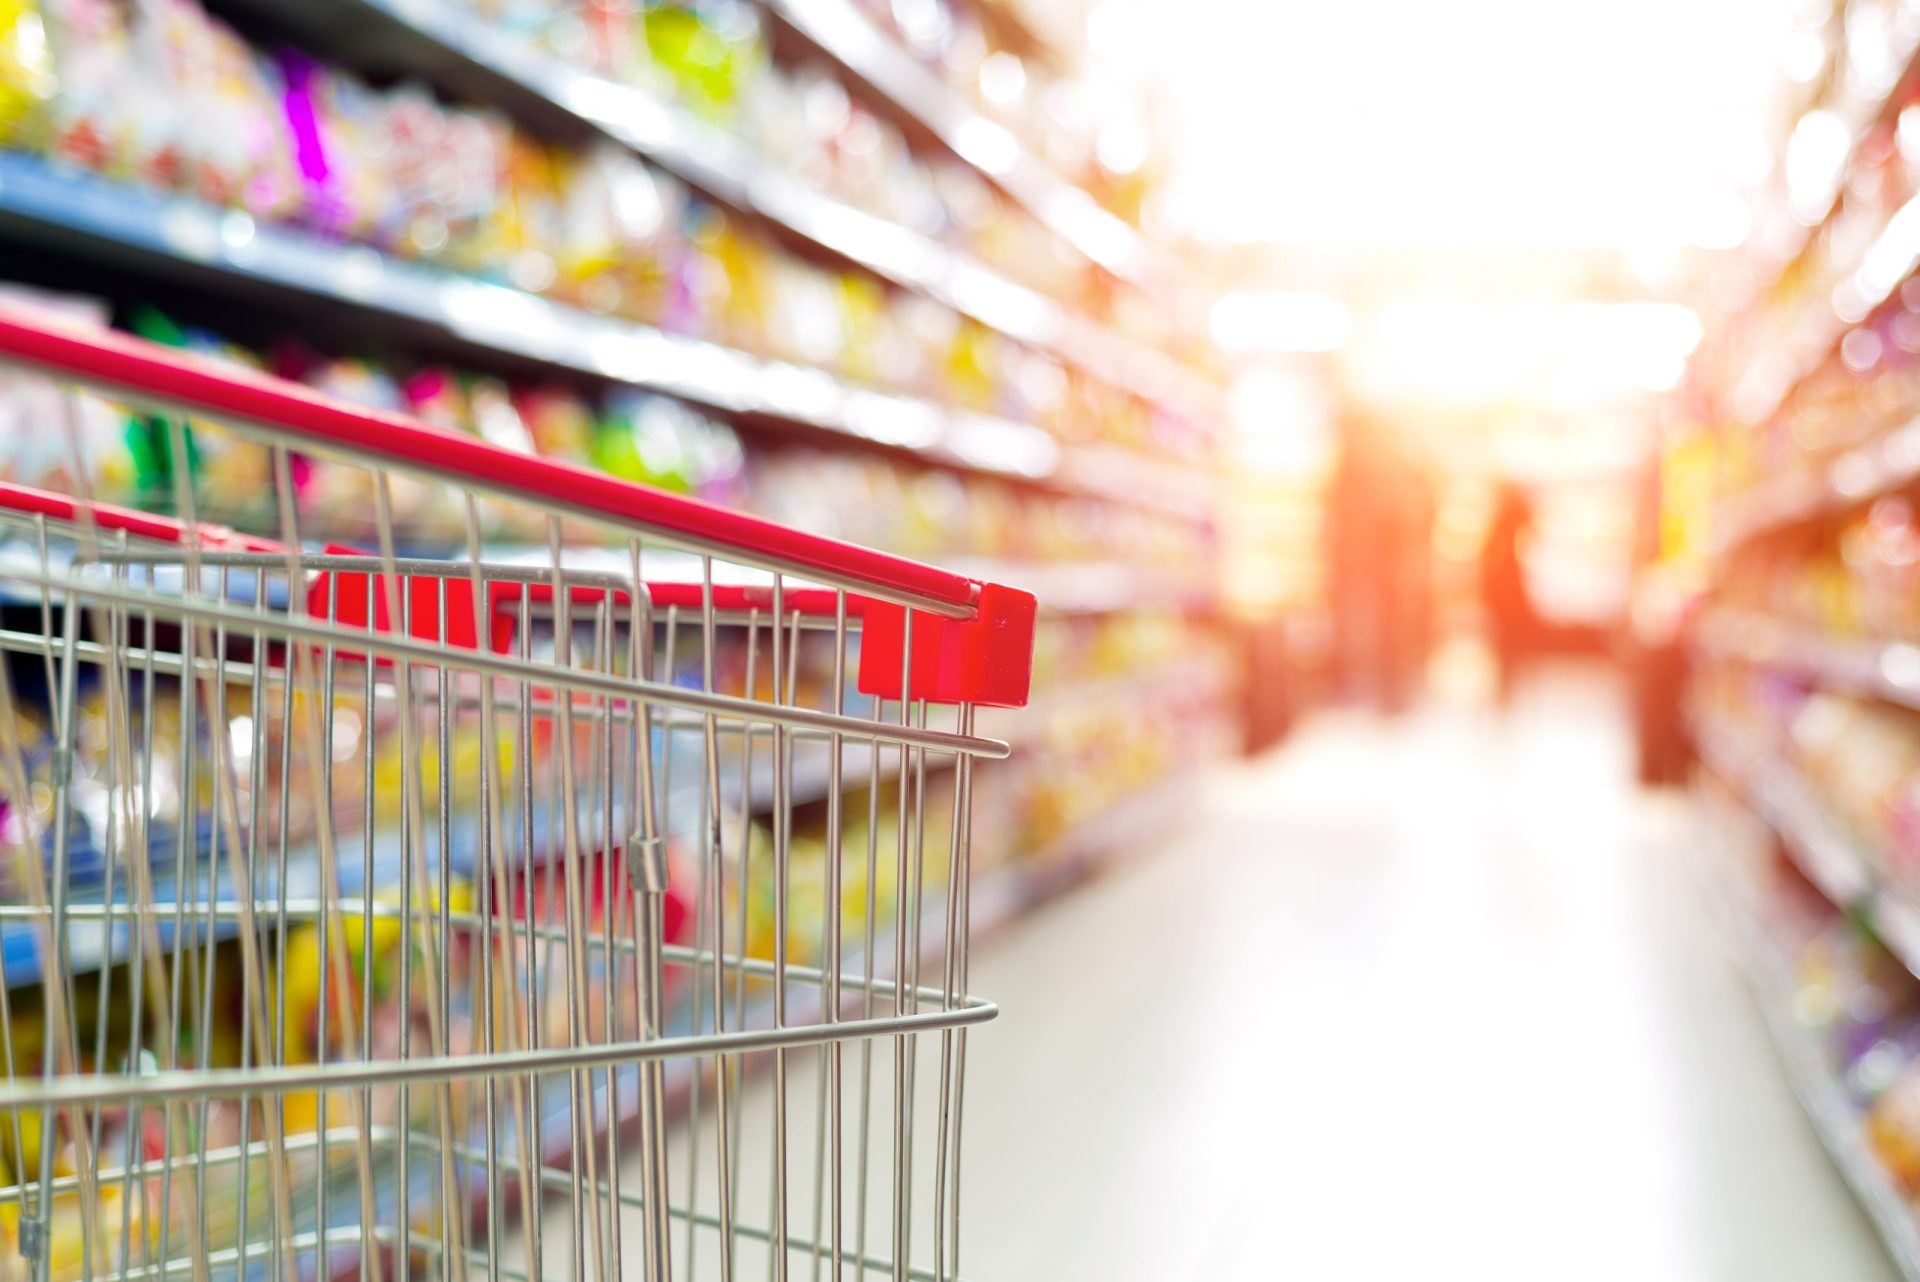 Produtos a 33 cêntimos levam supermercado low cost a fechar portas